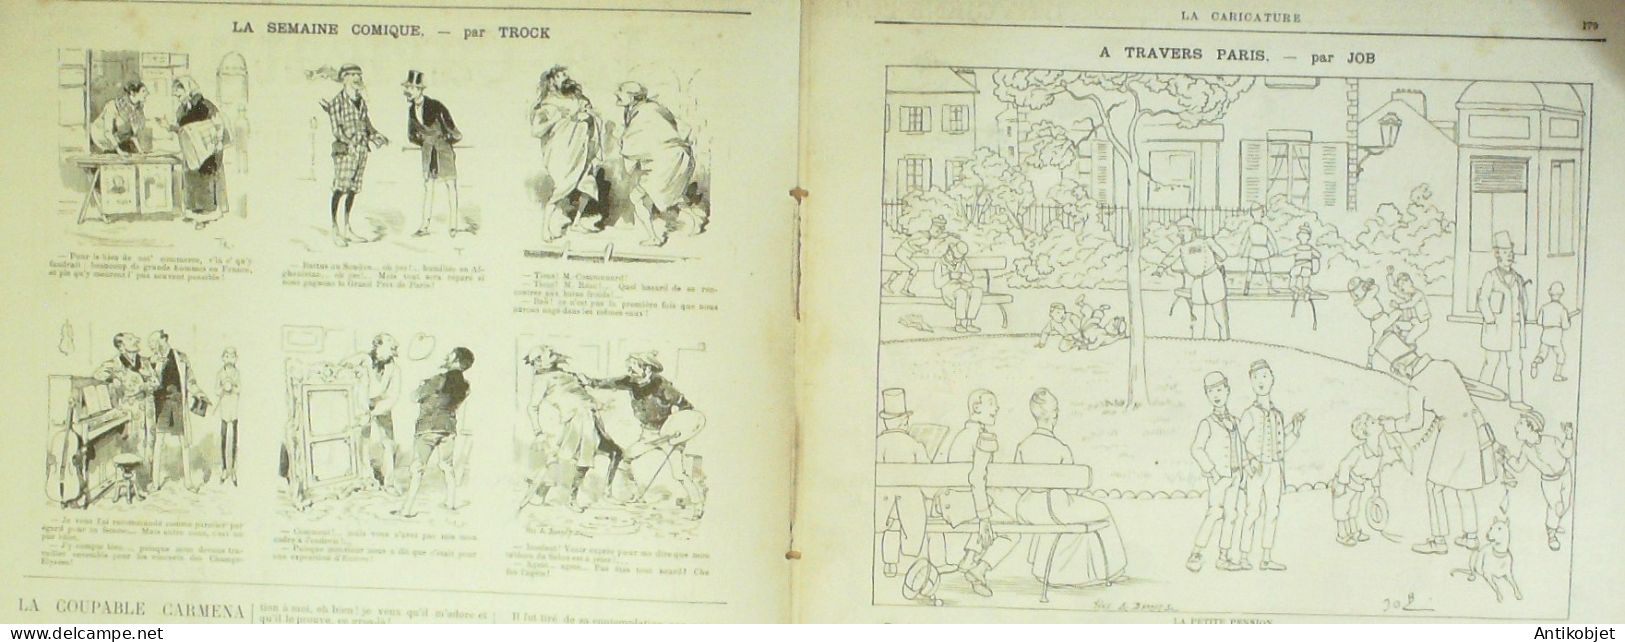 La Caricature 1885 N°284 Civils & Militaires Caran D'Ache Hygiène Trock Job - Magazines - Before 1900